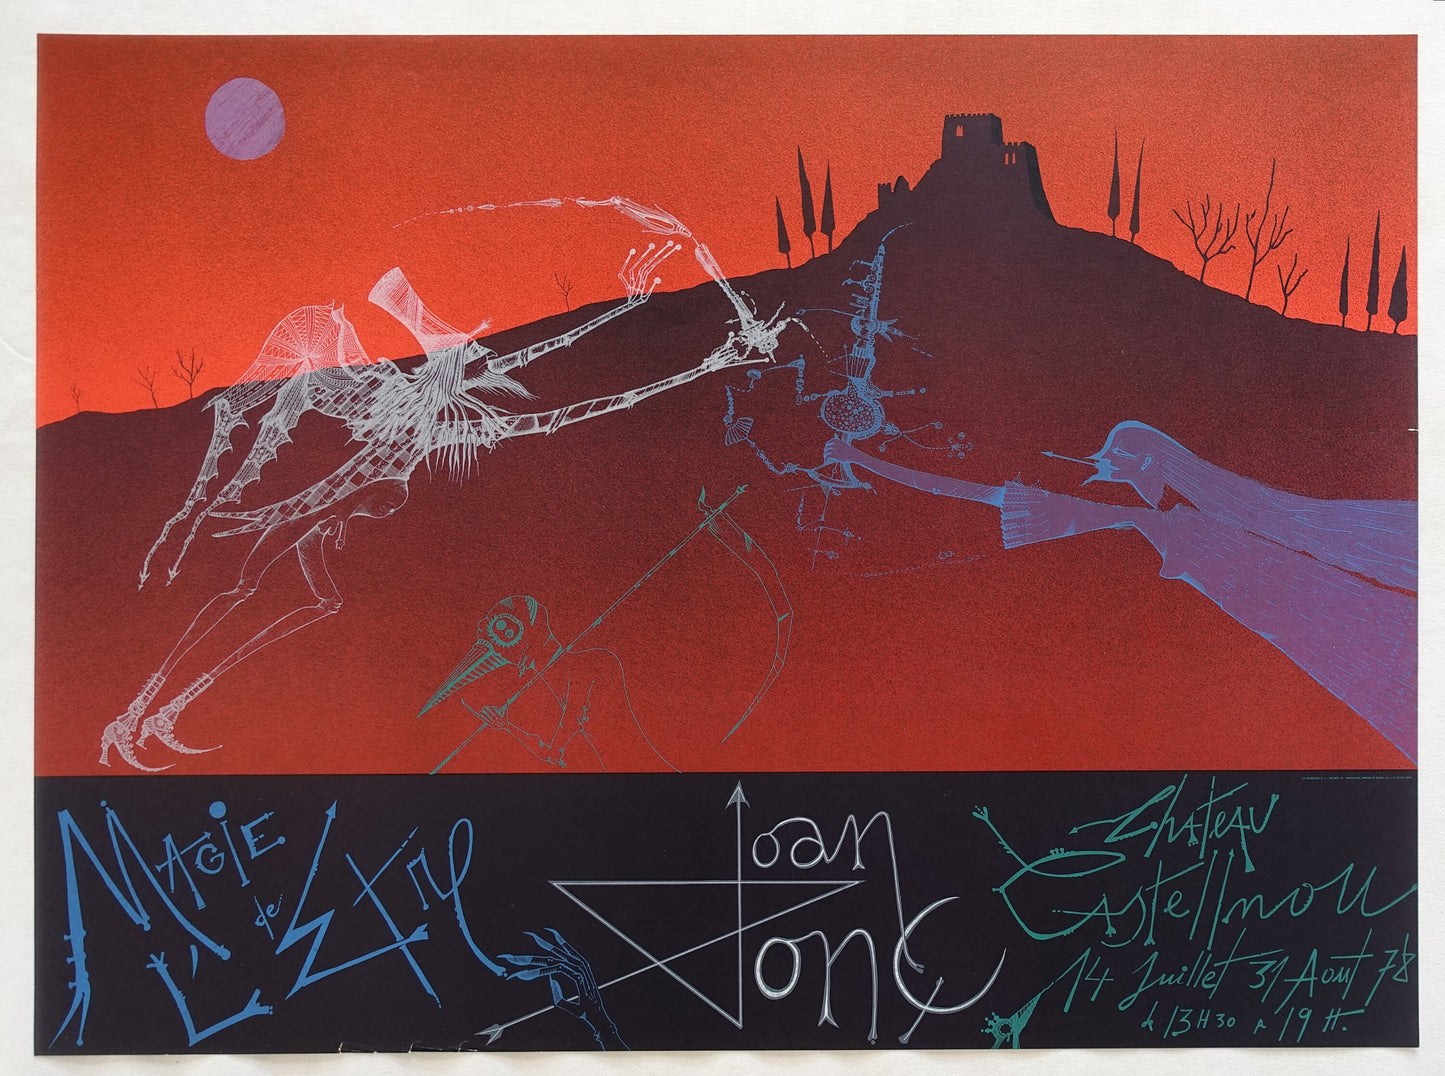 1978 Joan Ponc Chateau Castelnou Exhibition Poster - Original Vintage Poster